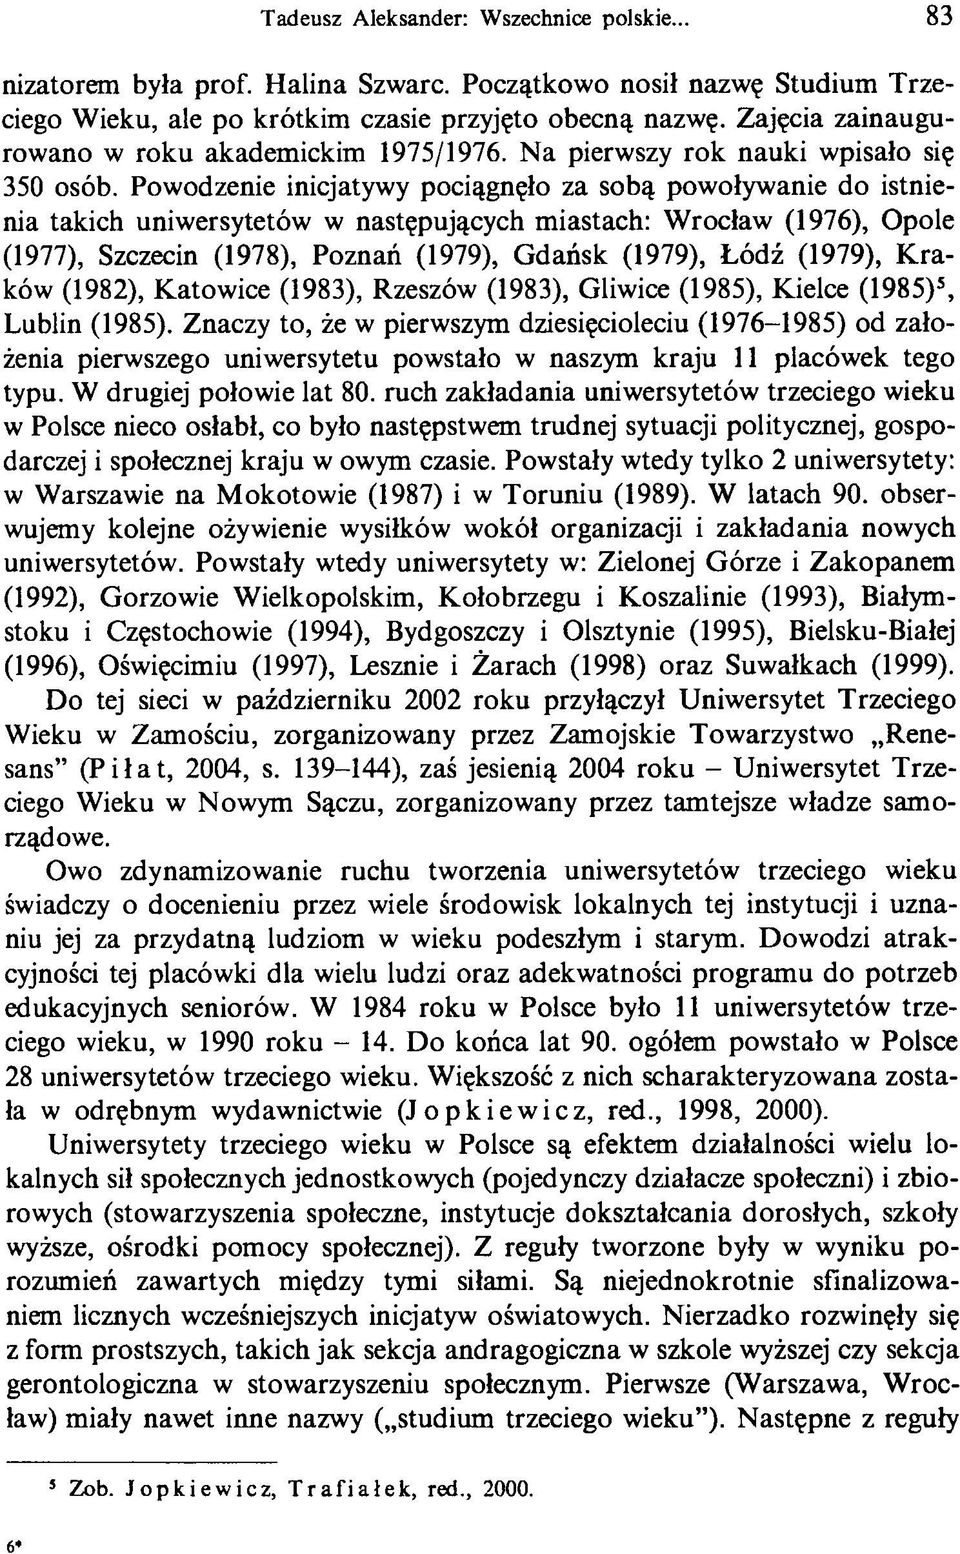 Powodzenie inicjatywy pociągnęło za sobą powoływanie do istnienia takich uniwersytetów w następujących miastach: Wrocław (1976), Opole (1977), Szczecin (1978), Poznań (1979), Gdańsk (1979), Łódź